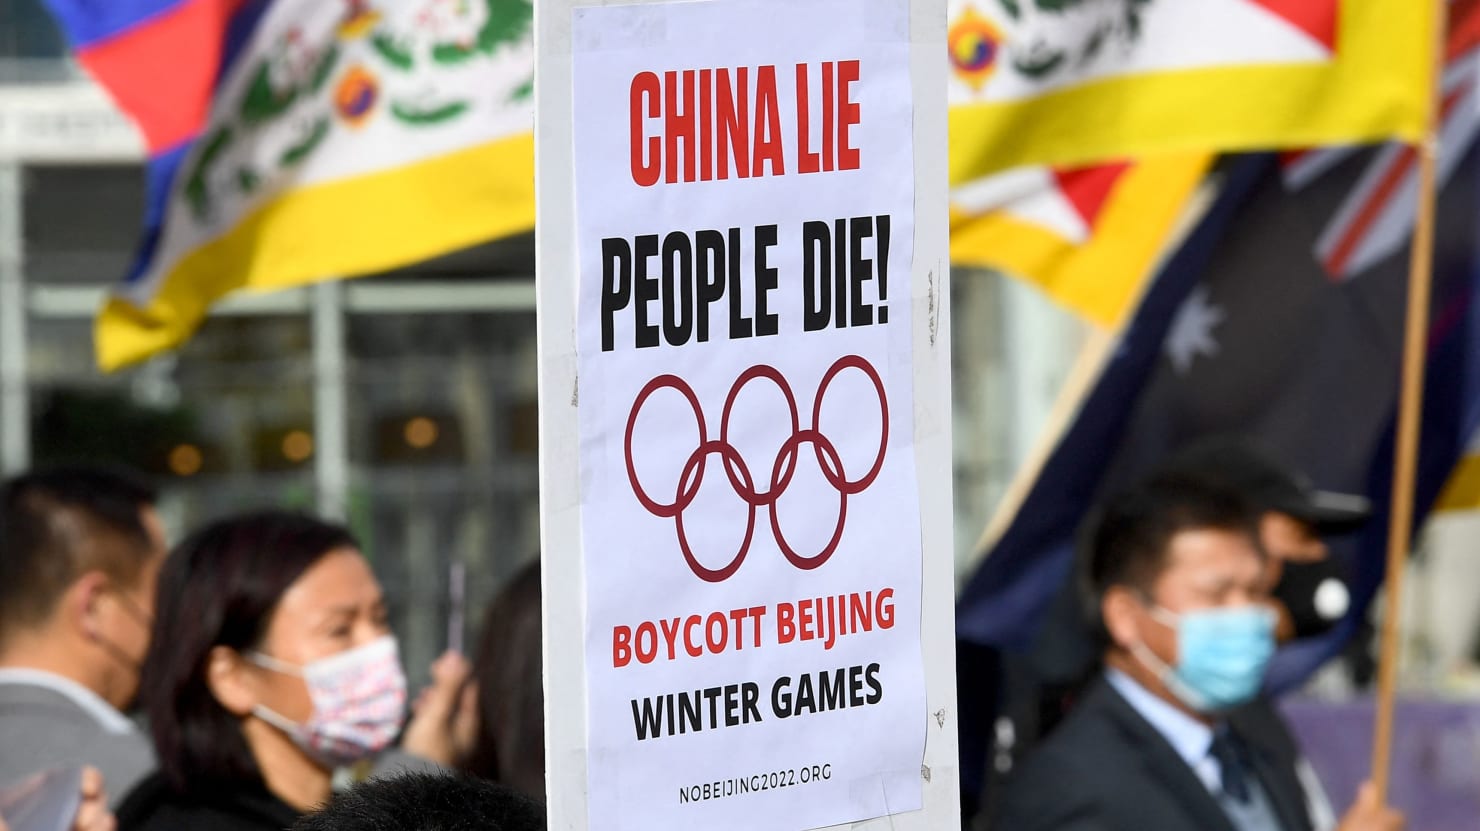 La conferencia de prensa oficial de los Juegos Olímpicos defiende los abusos de China contra los uigures